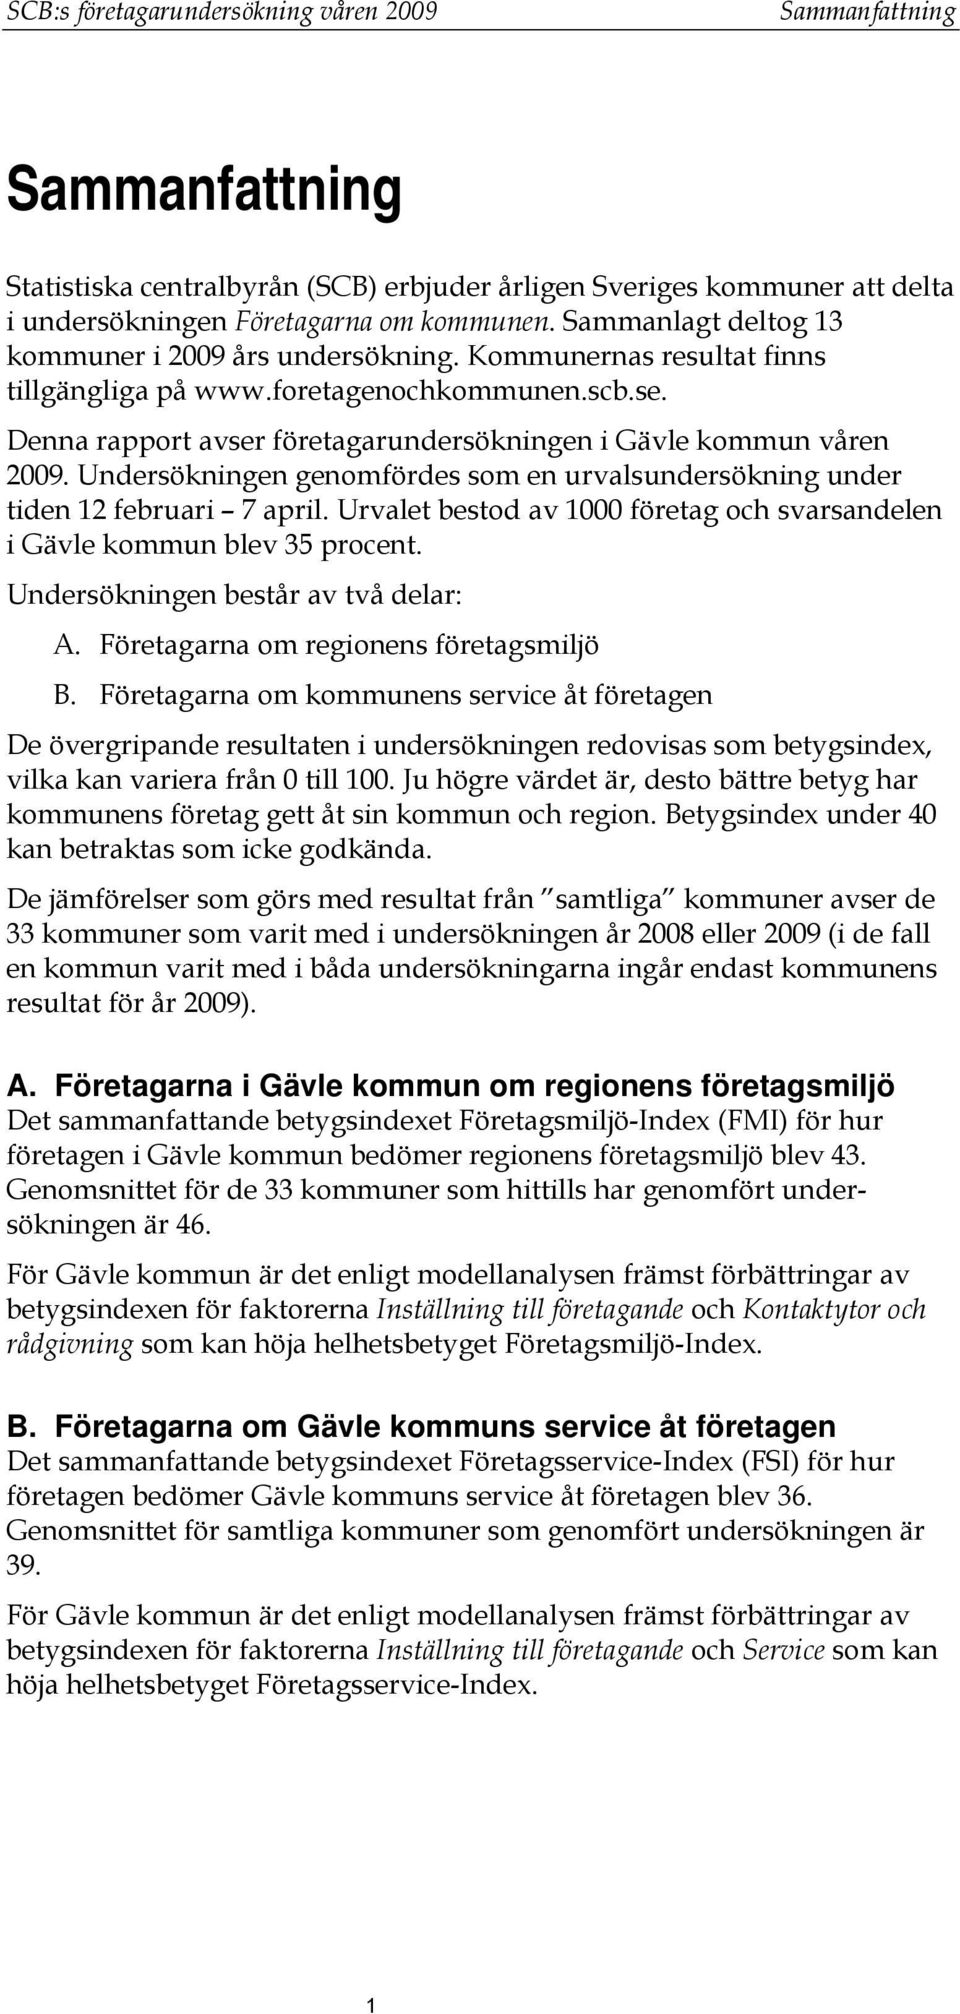 Denna rapport avser företagarundersökningen i Gävle kommun våren 2009. Undersökningen genomfördes som en urvalsundersökning under tiden 12 februari 7 april.